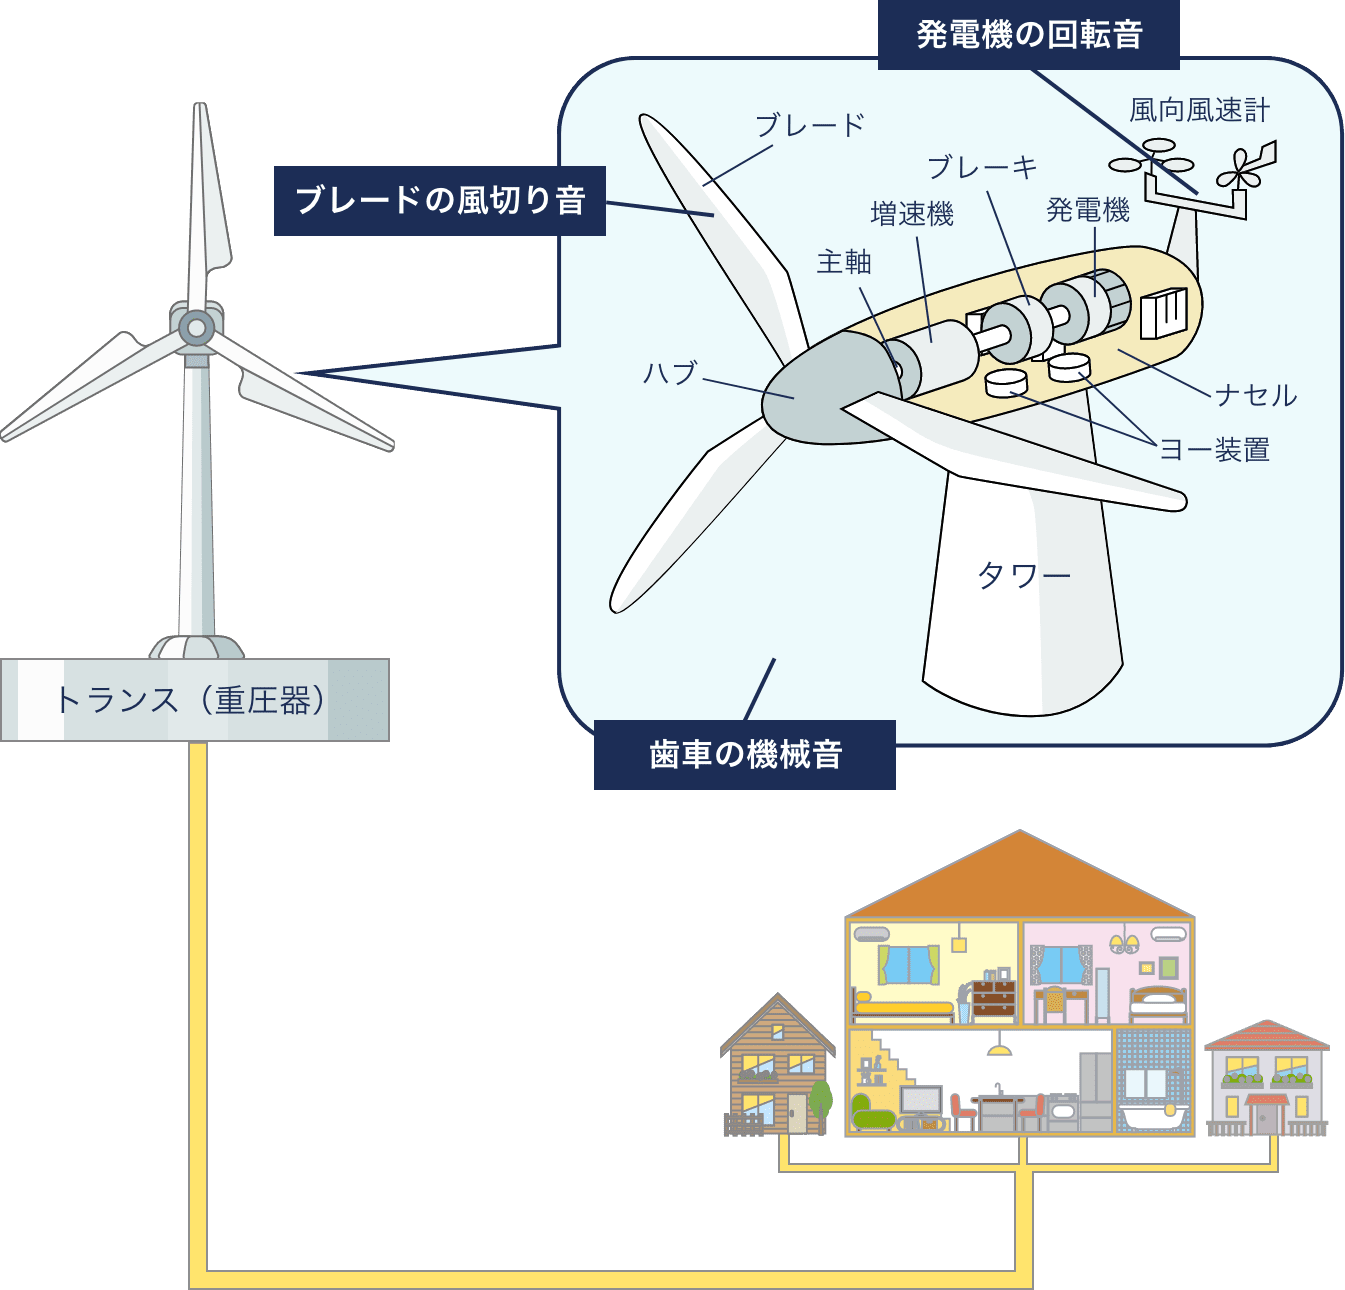 風力発電について - （仮称）鳥取西部風力発電事業について